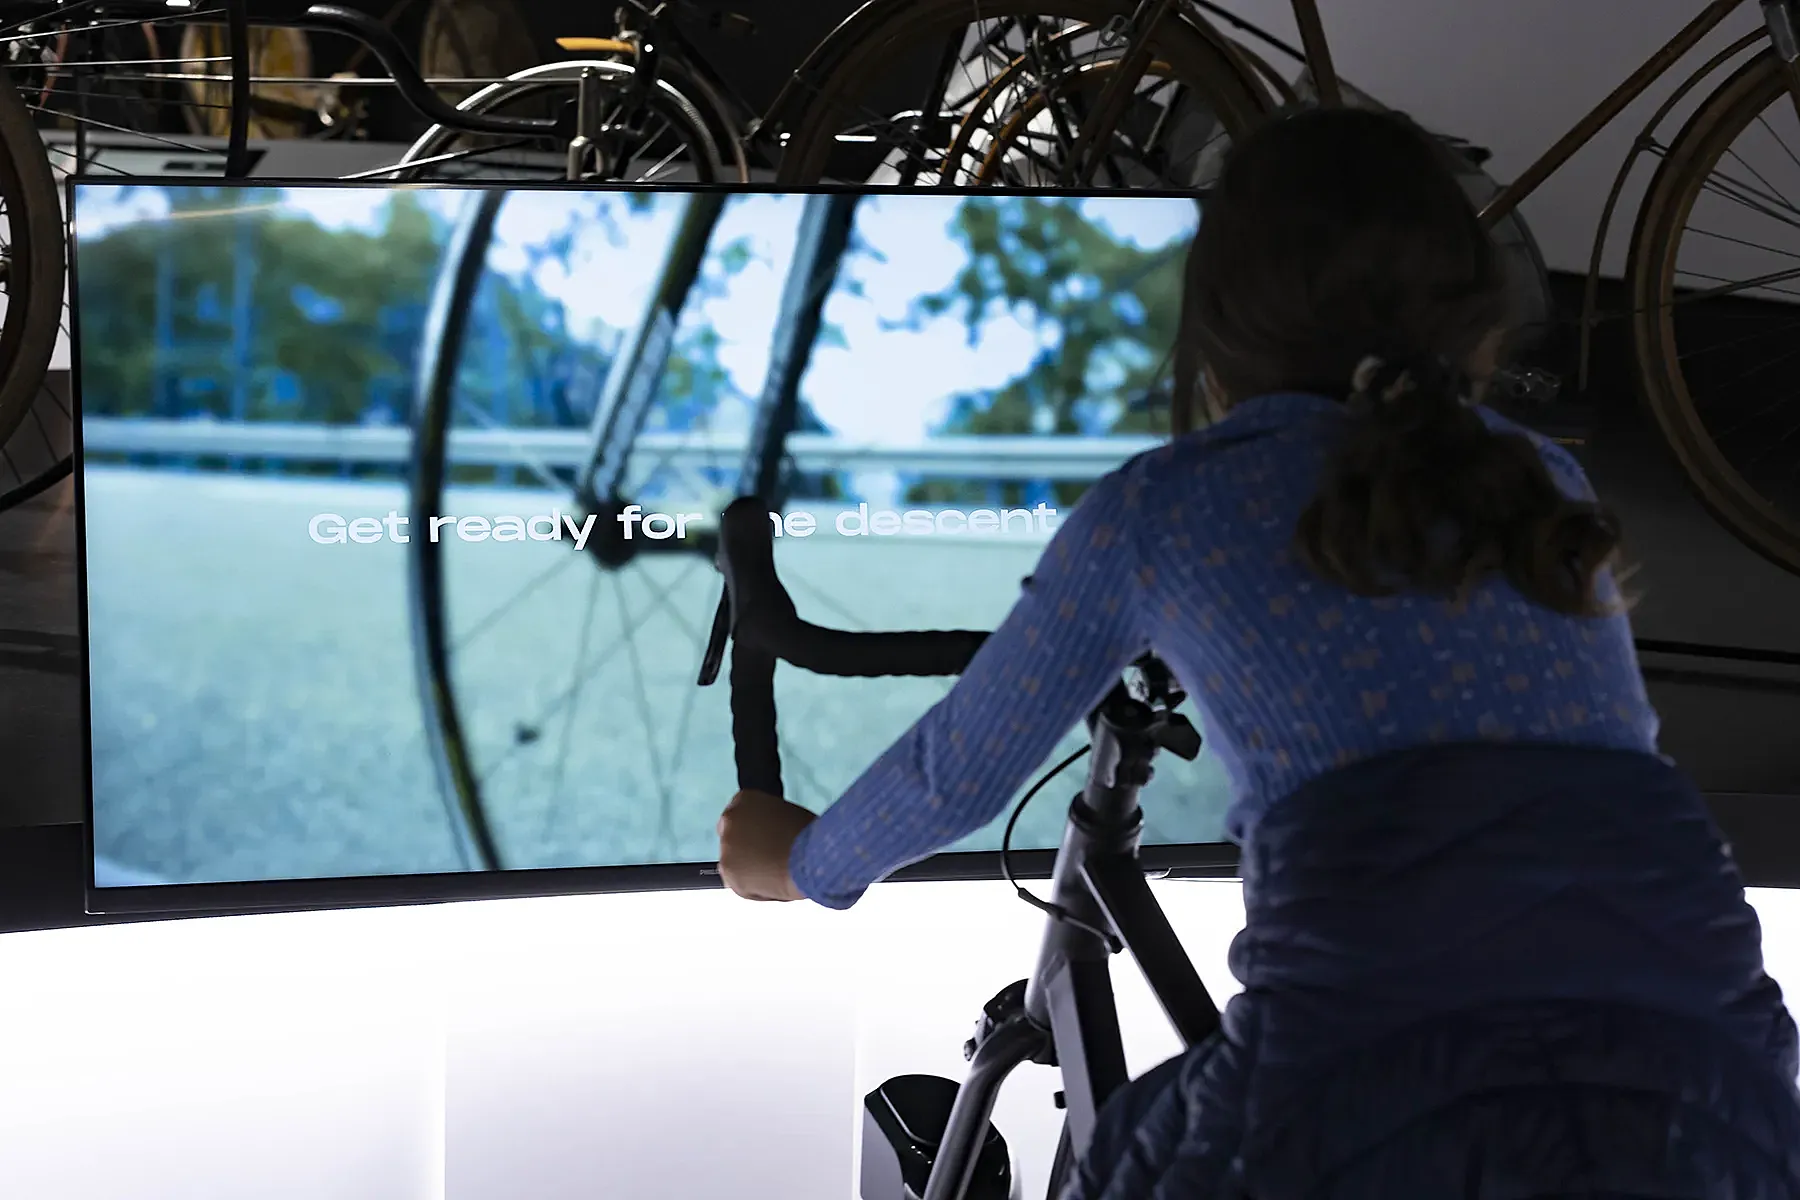 Tres simuladores virtuales de ciclismo para subir puertos y hacer descensos.